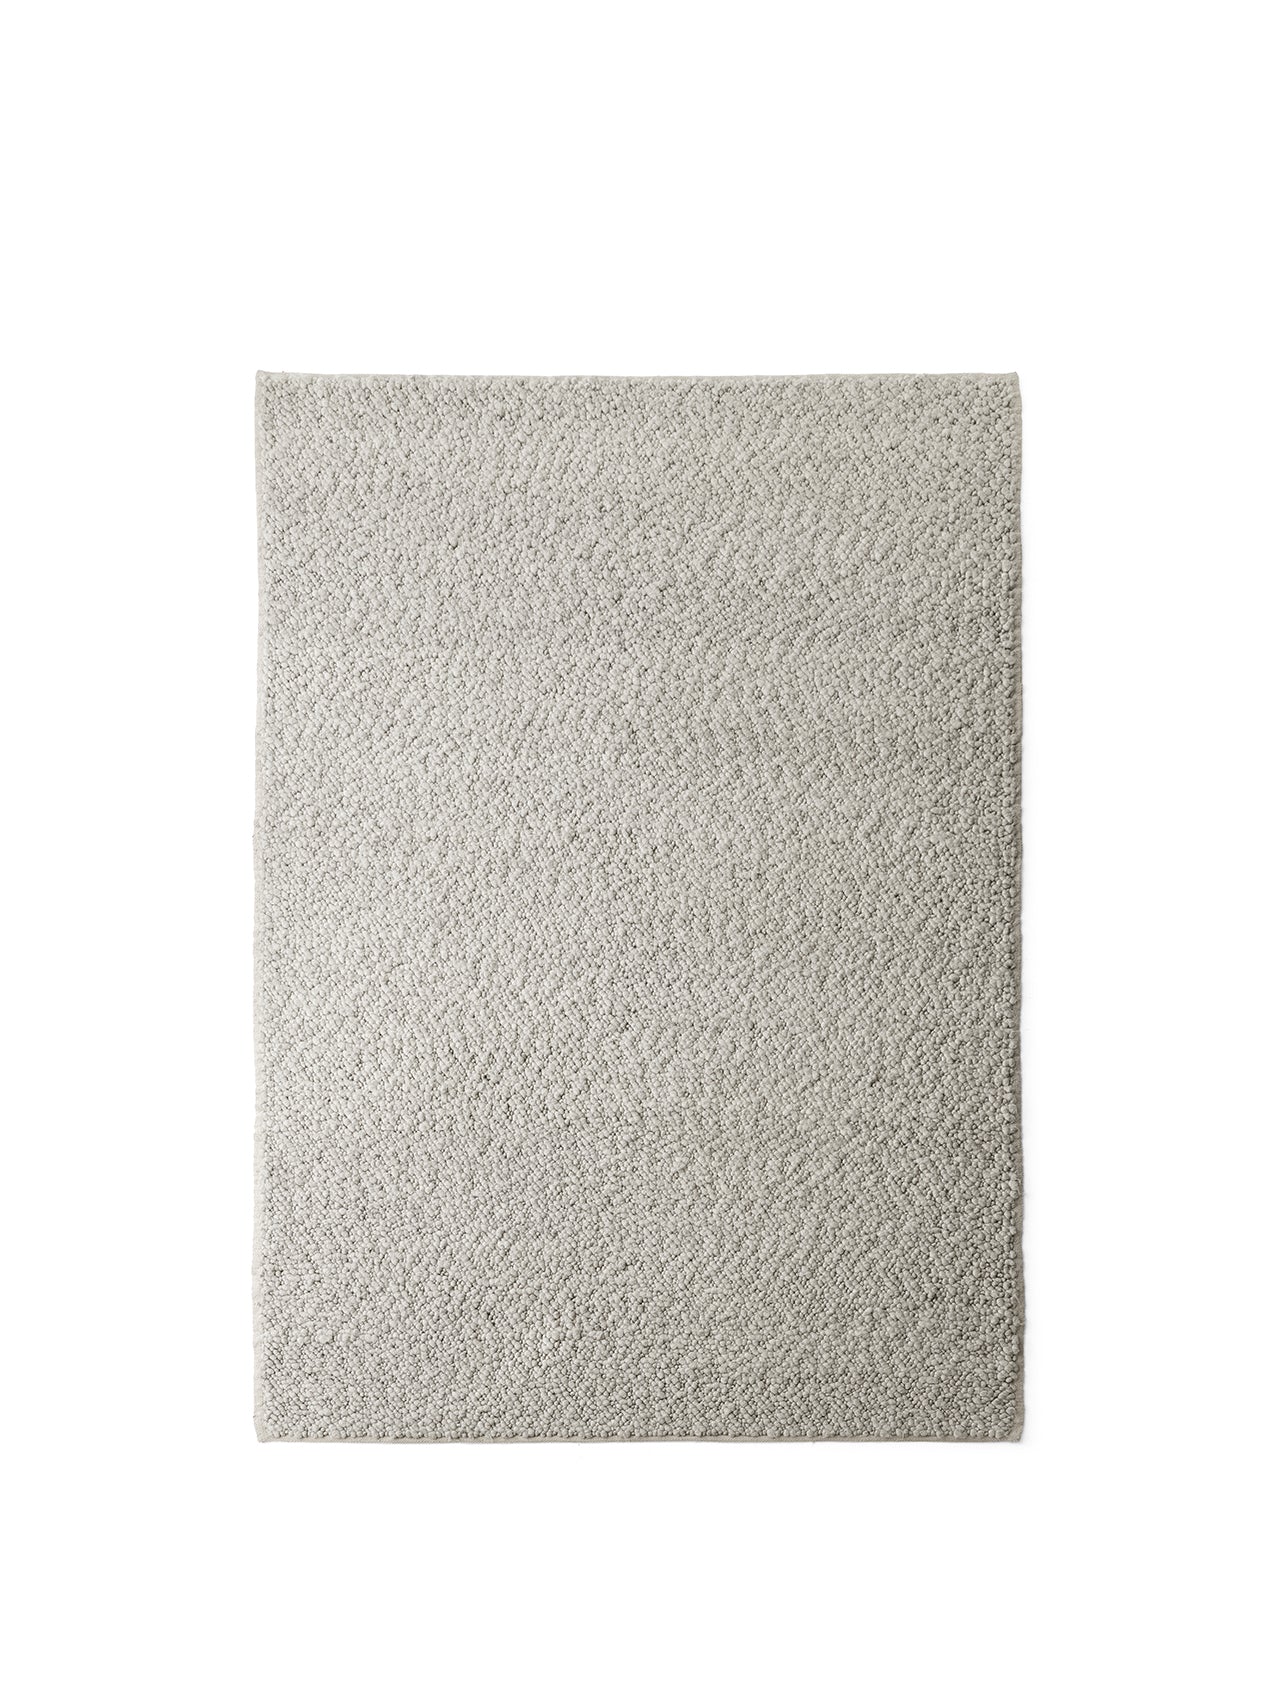 Menu - Gravel tapijt, 200x300 cm, grijs